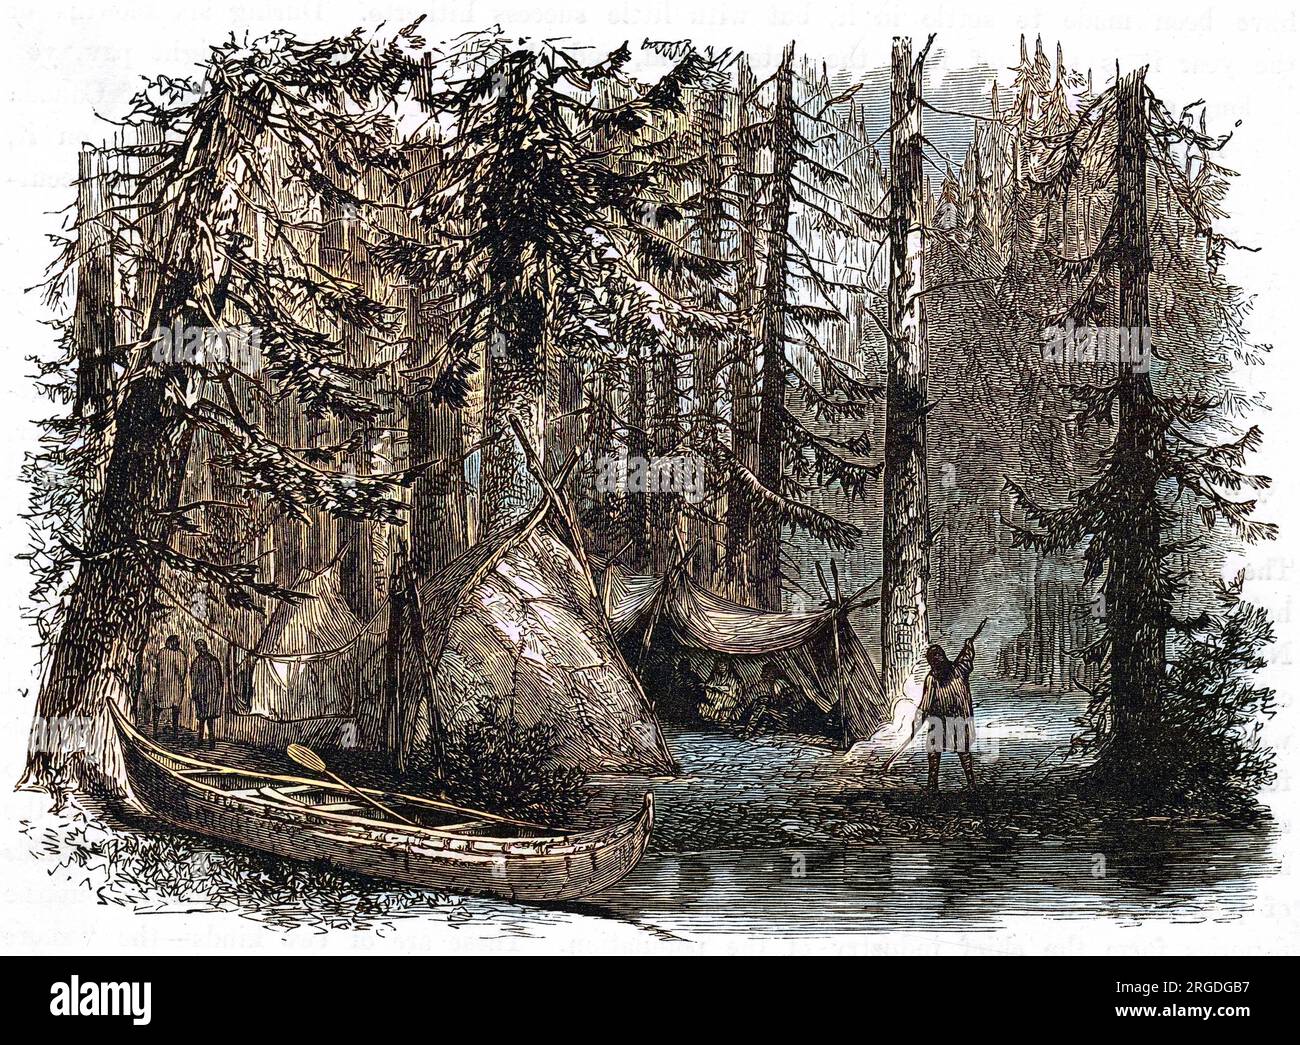 Kanadischer Urwald, Kanu mit Birkenrinde und indische Hütten - ein vereinfachter Blick auf die kanadische Szene. Stockfoto